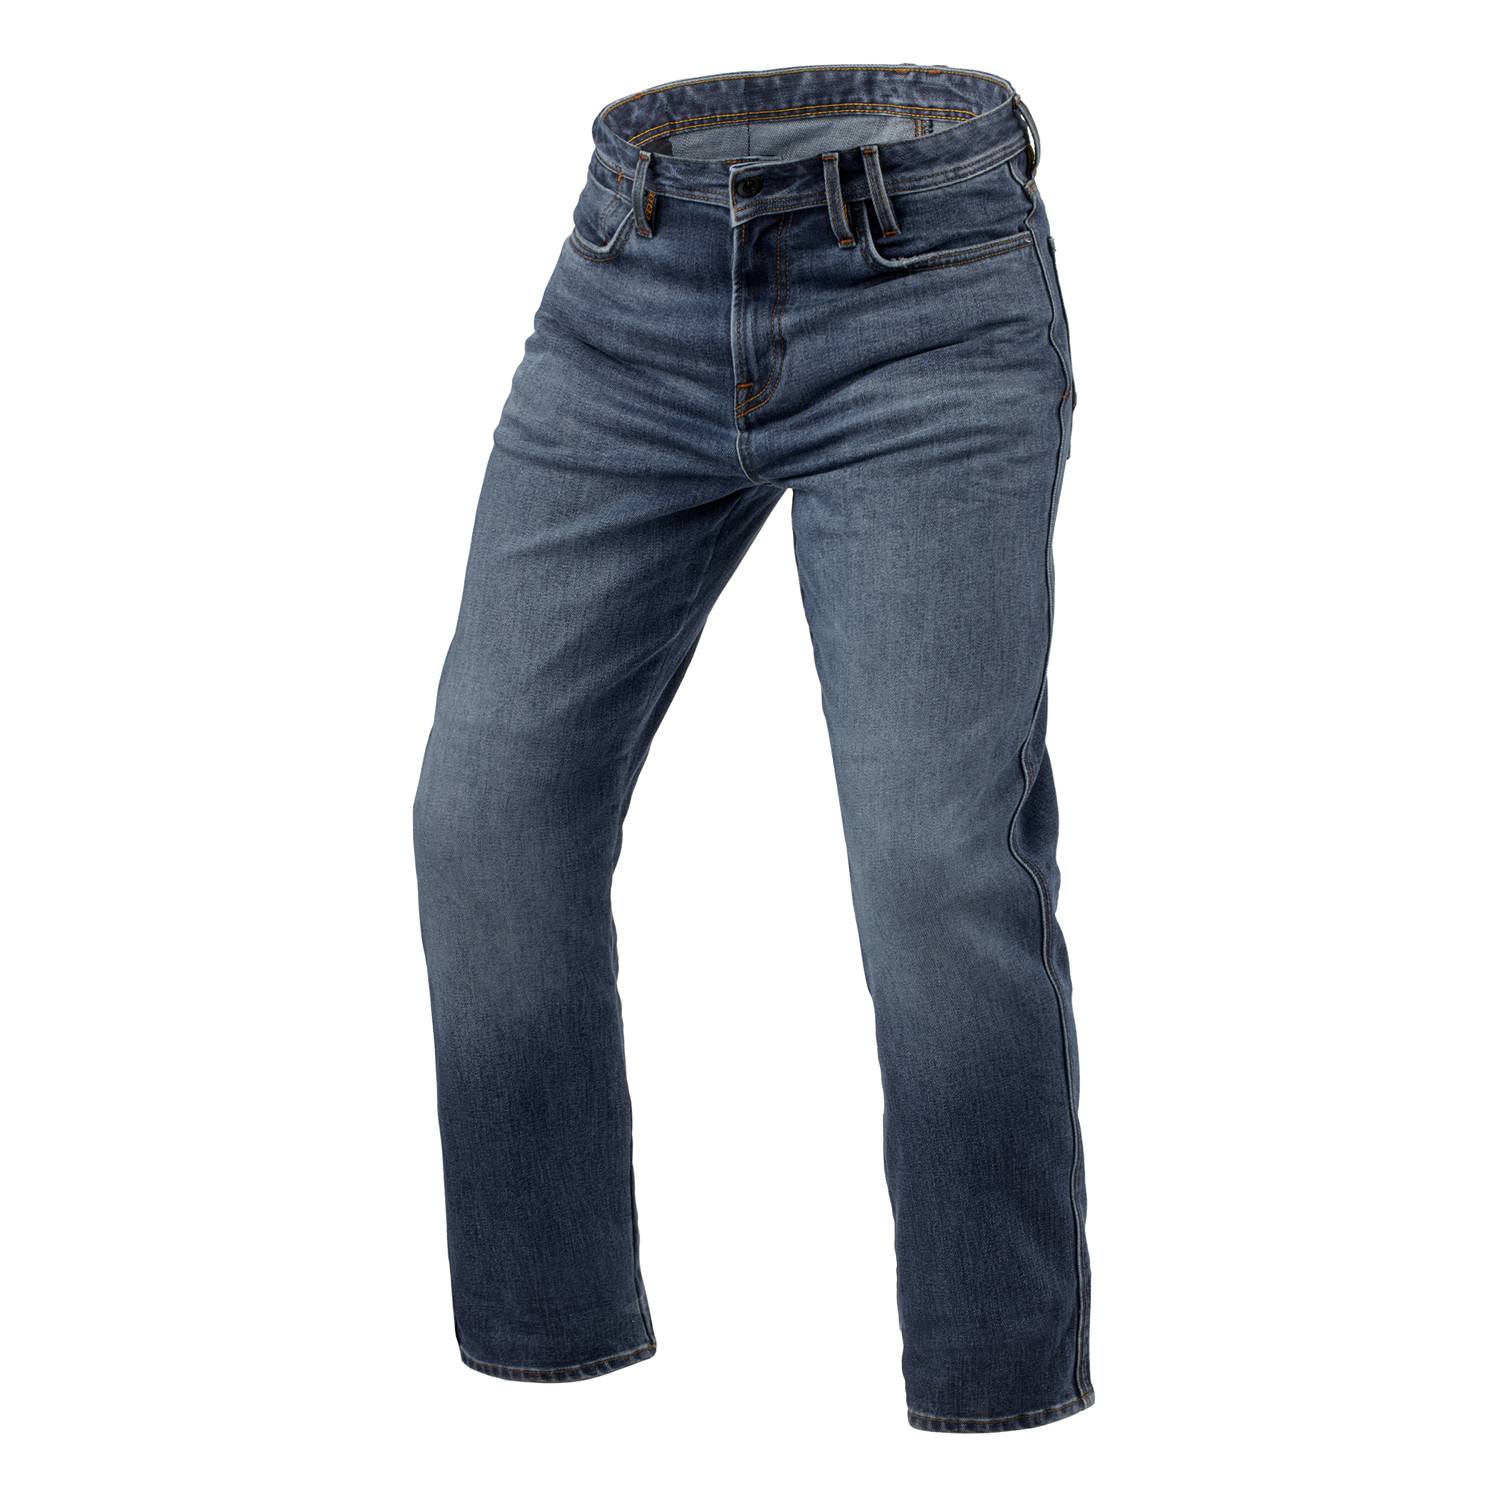 Image of REV'IT! Jeans Lombard 3 RF Mid Blue Stone L32 Motorcycle Jeans Size L32/W33 EN